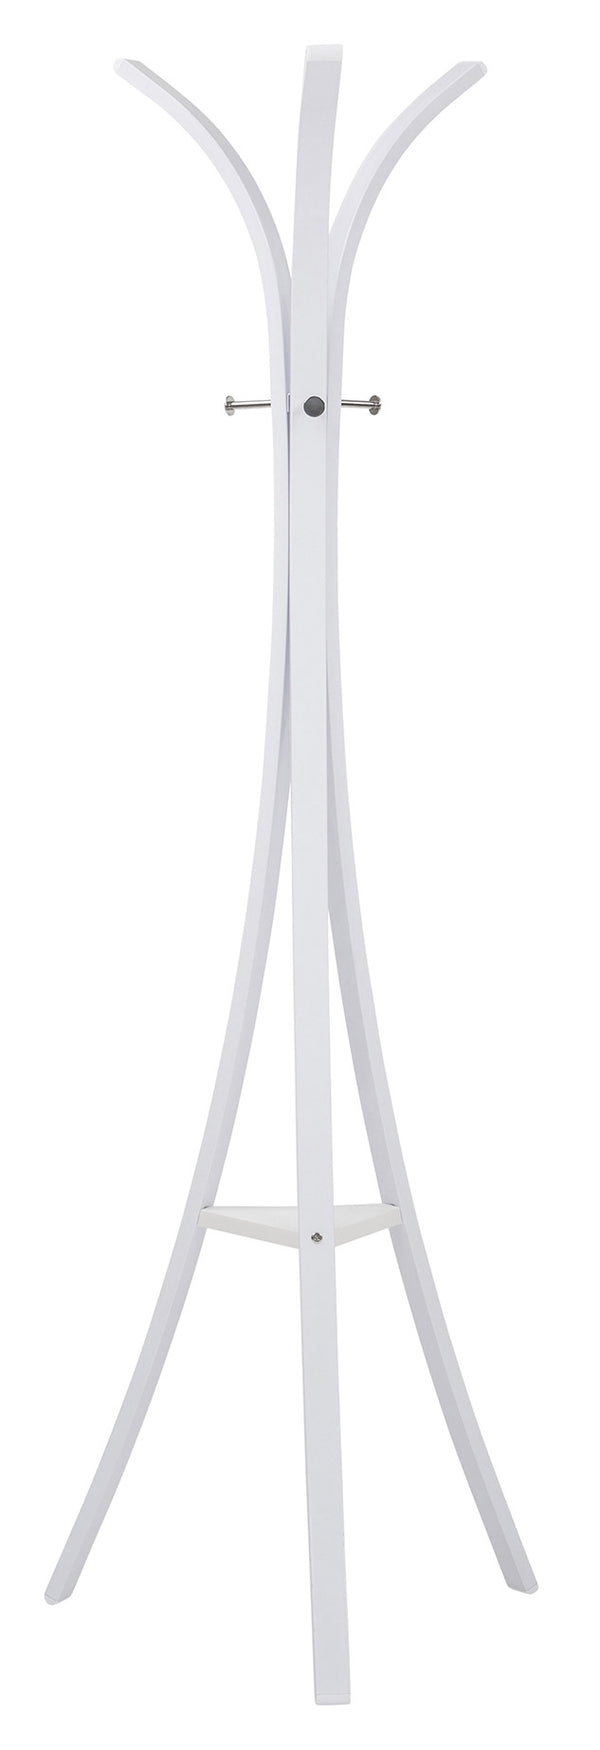 Kleiderbügel 45x45x175 cm aus weiß lackiertem Metall New Star prezzo